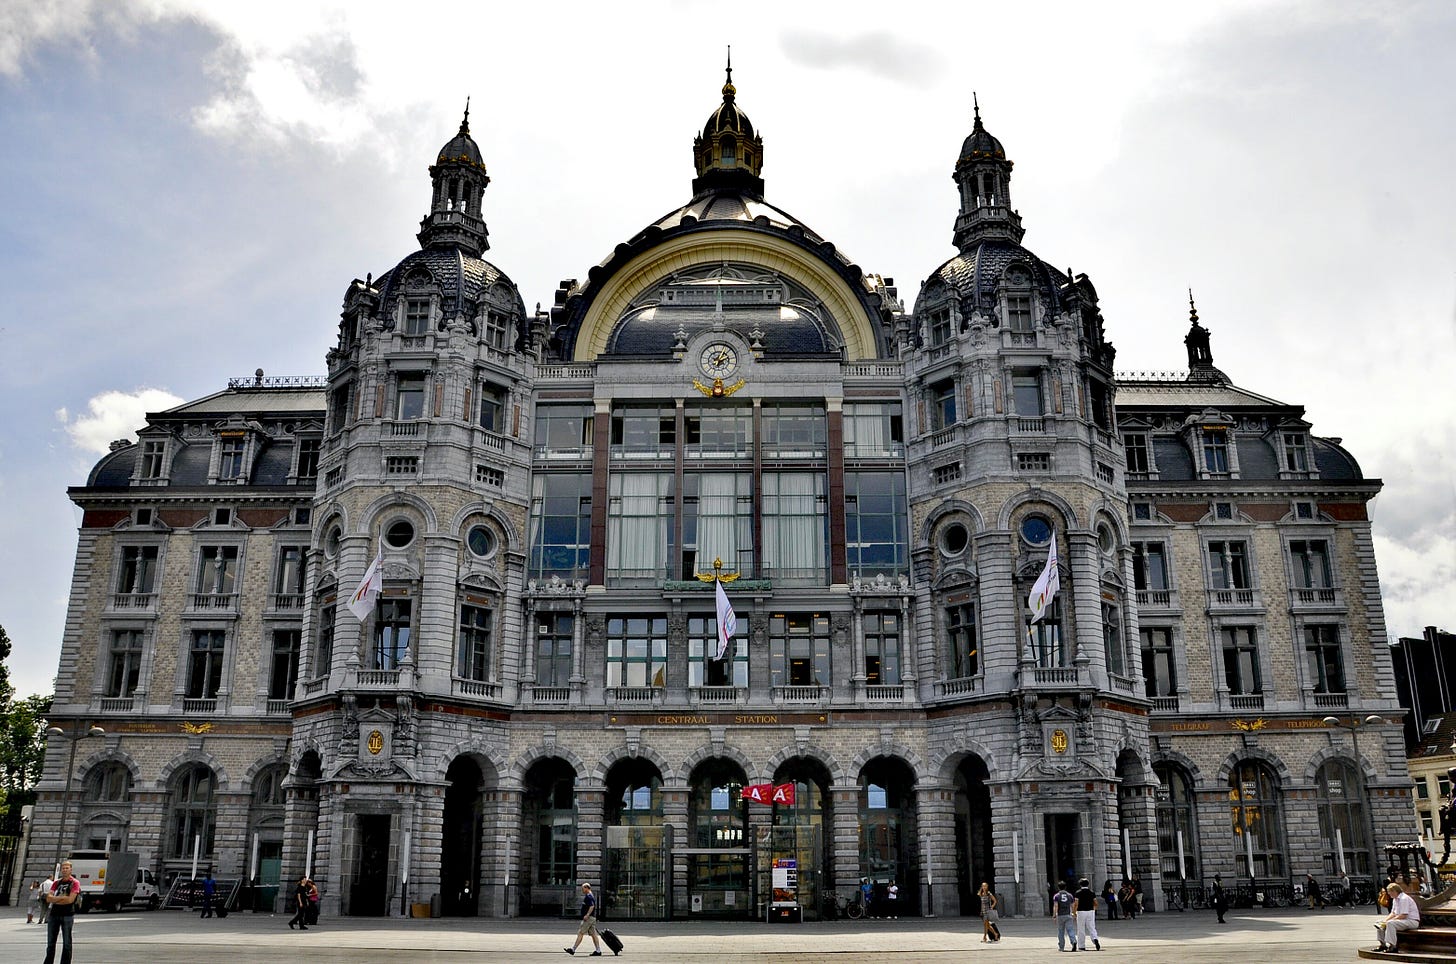 Antwerpen-Centraal railway station - Wikipedia